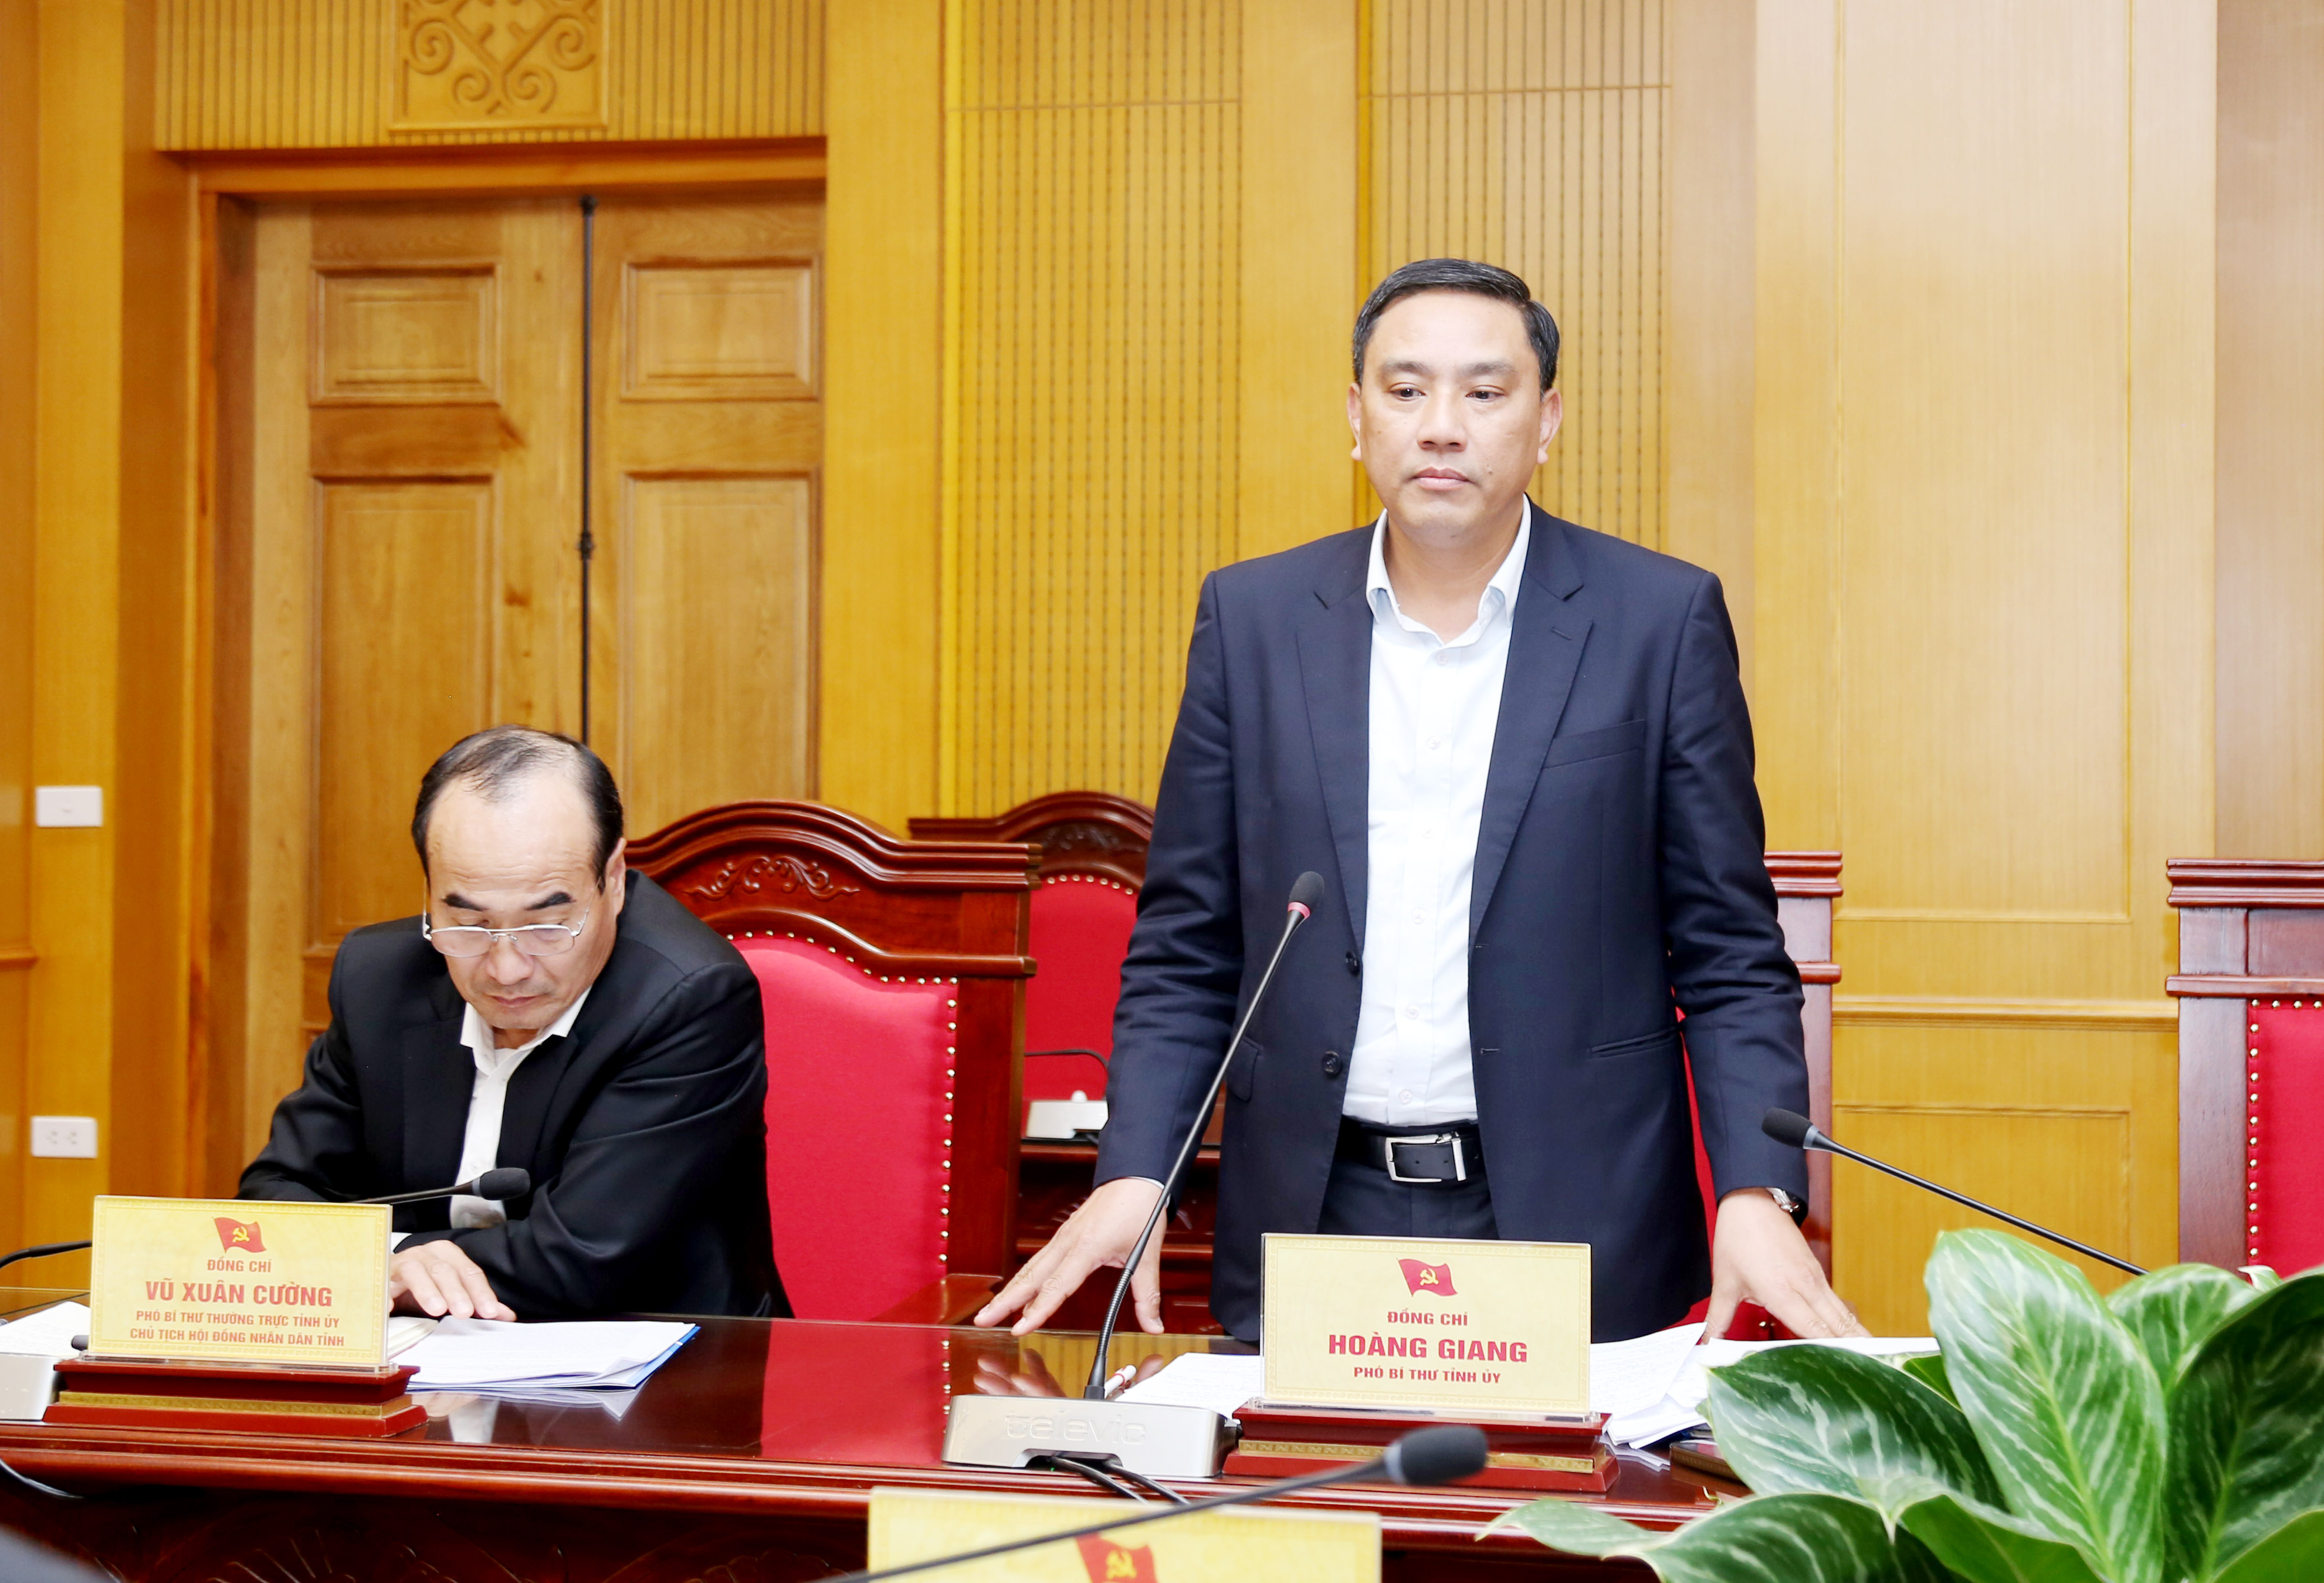 Đồng chí Phó Bí thư Tỉnh ủy Hoàng Giang có ý kiến chỉ đạo với 6 nội dung.